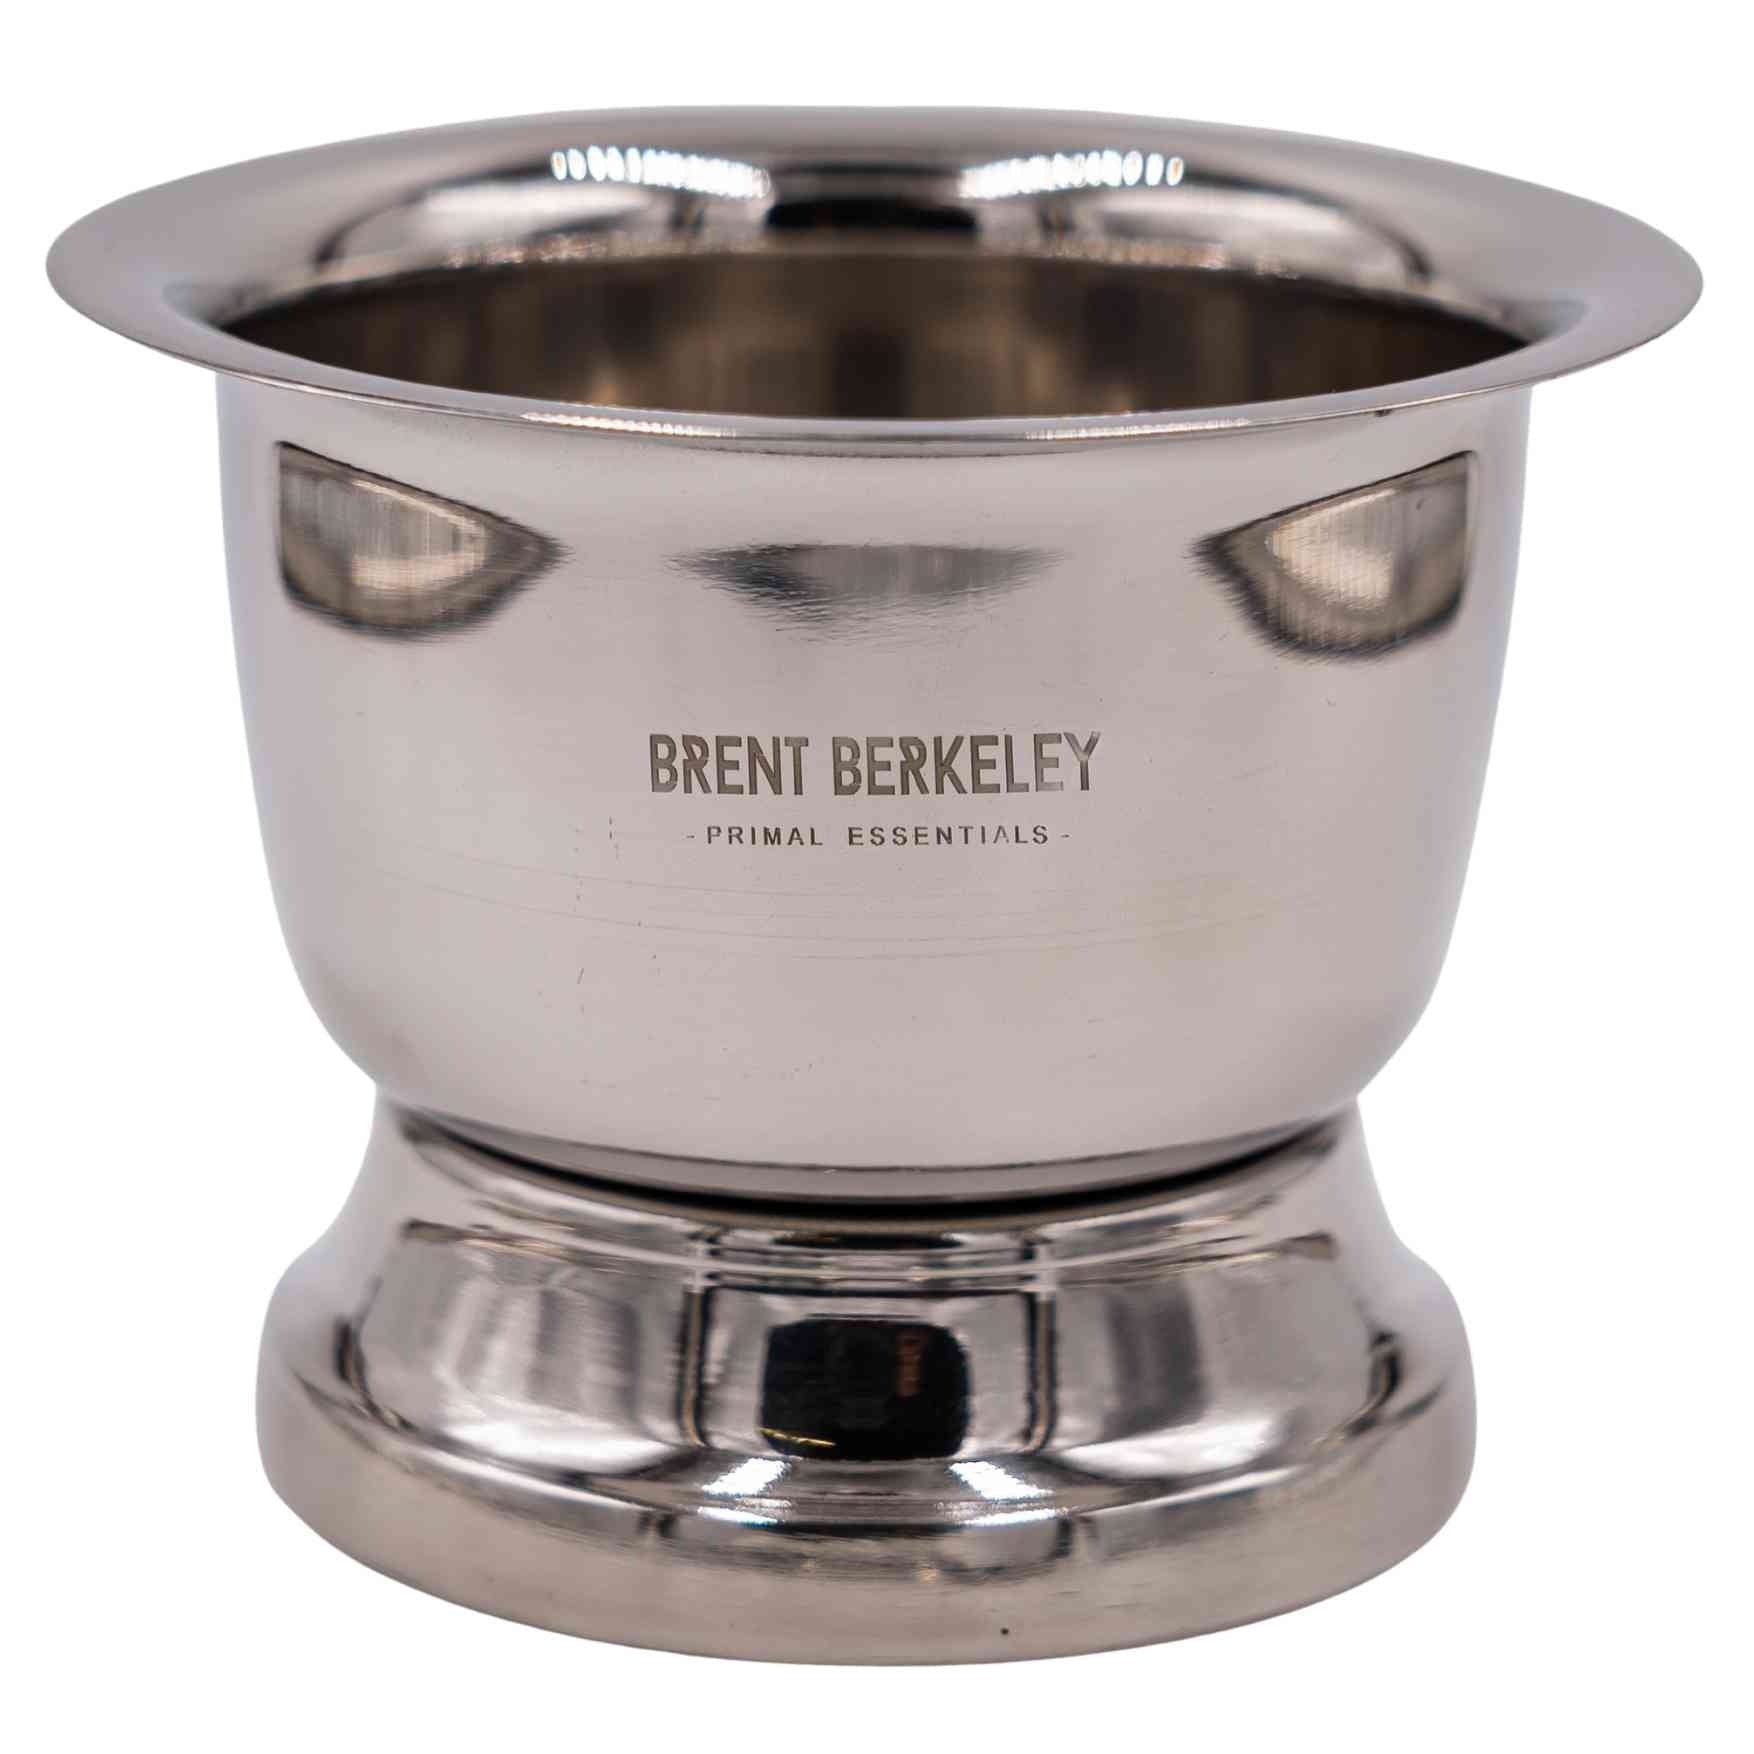 Brent Berkeley shaving mug / shaving bowl strainless steel